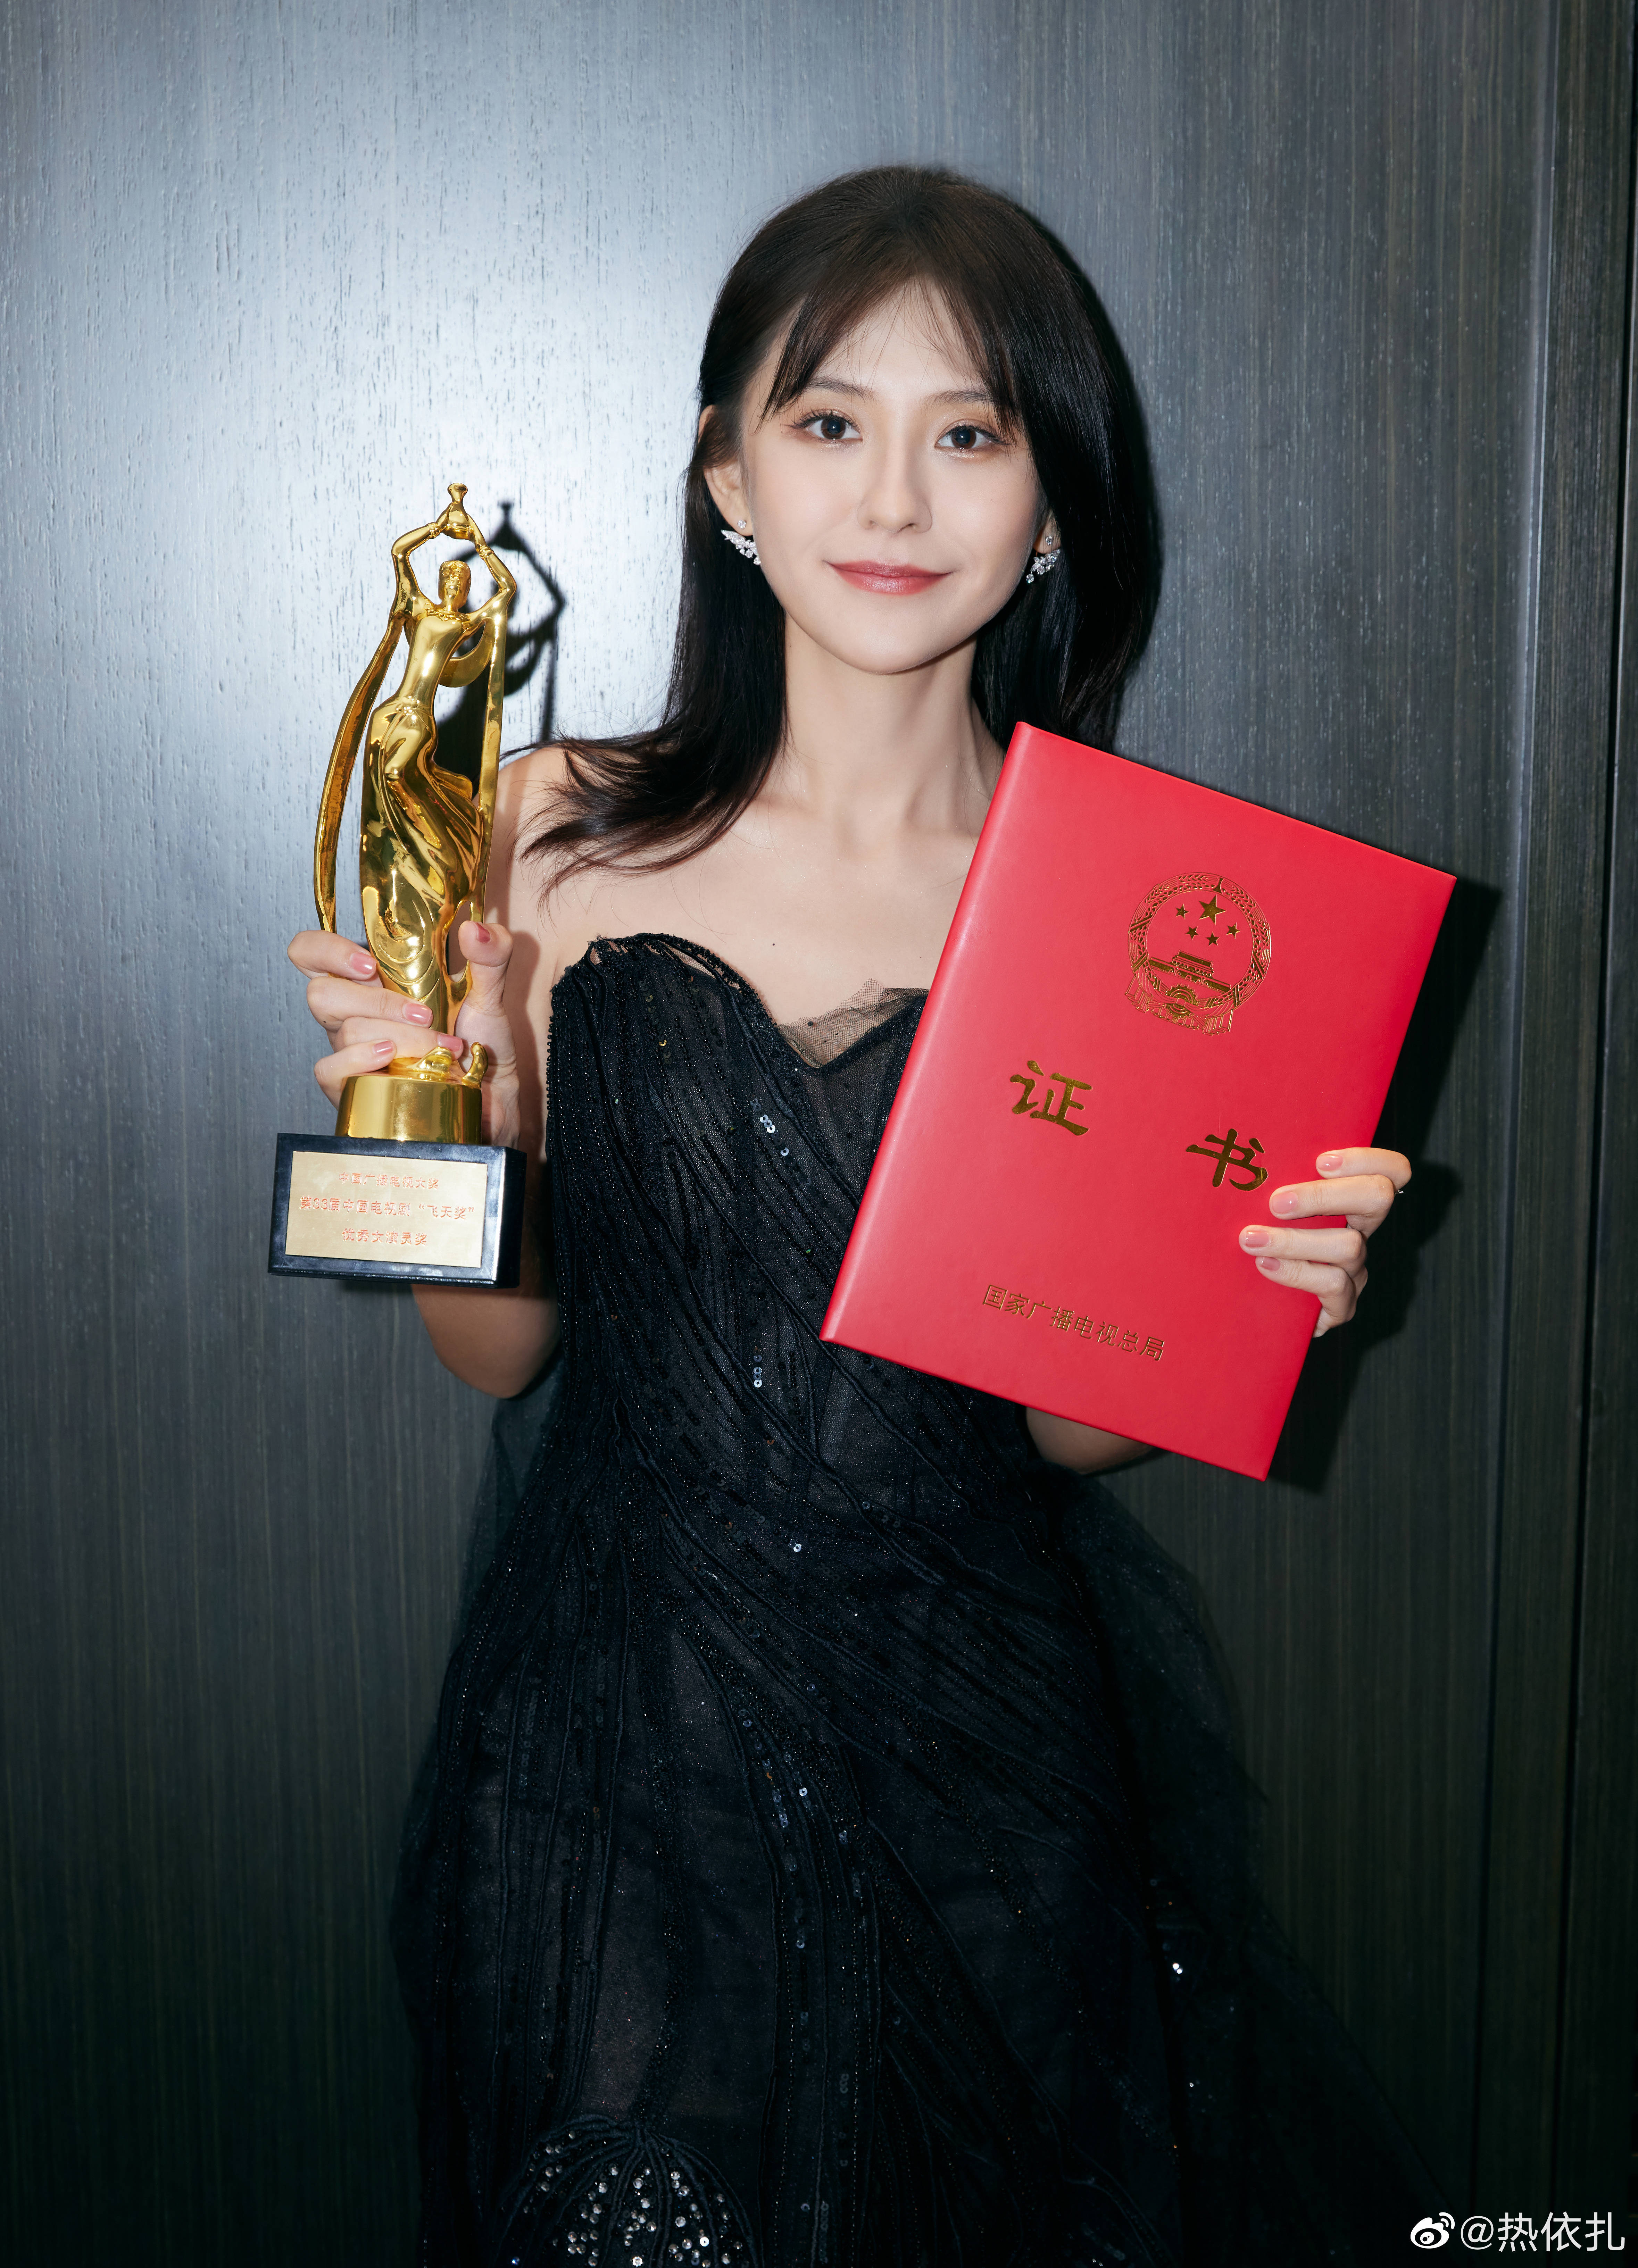 热依扎刚获得飞天奖优秀女演员,今晚有望再得金鹰奖最佳女主角